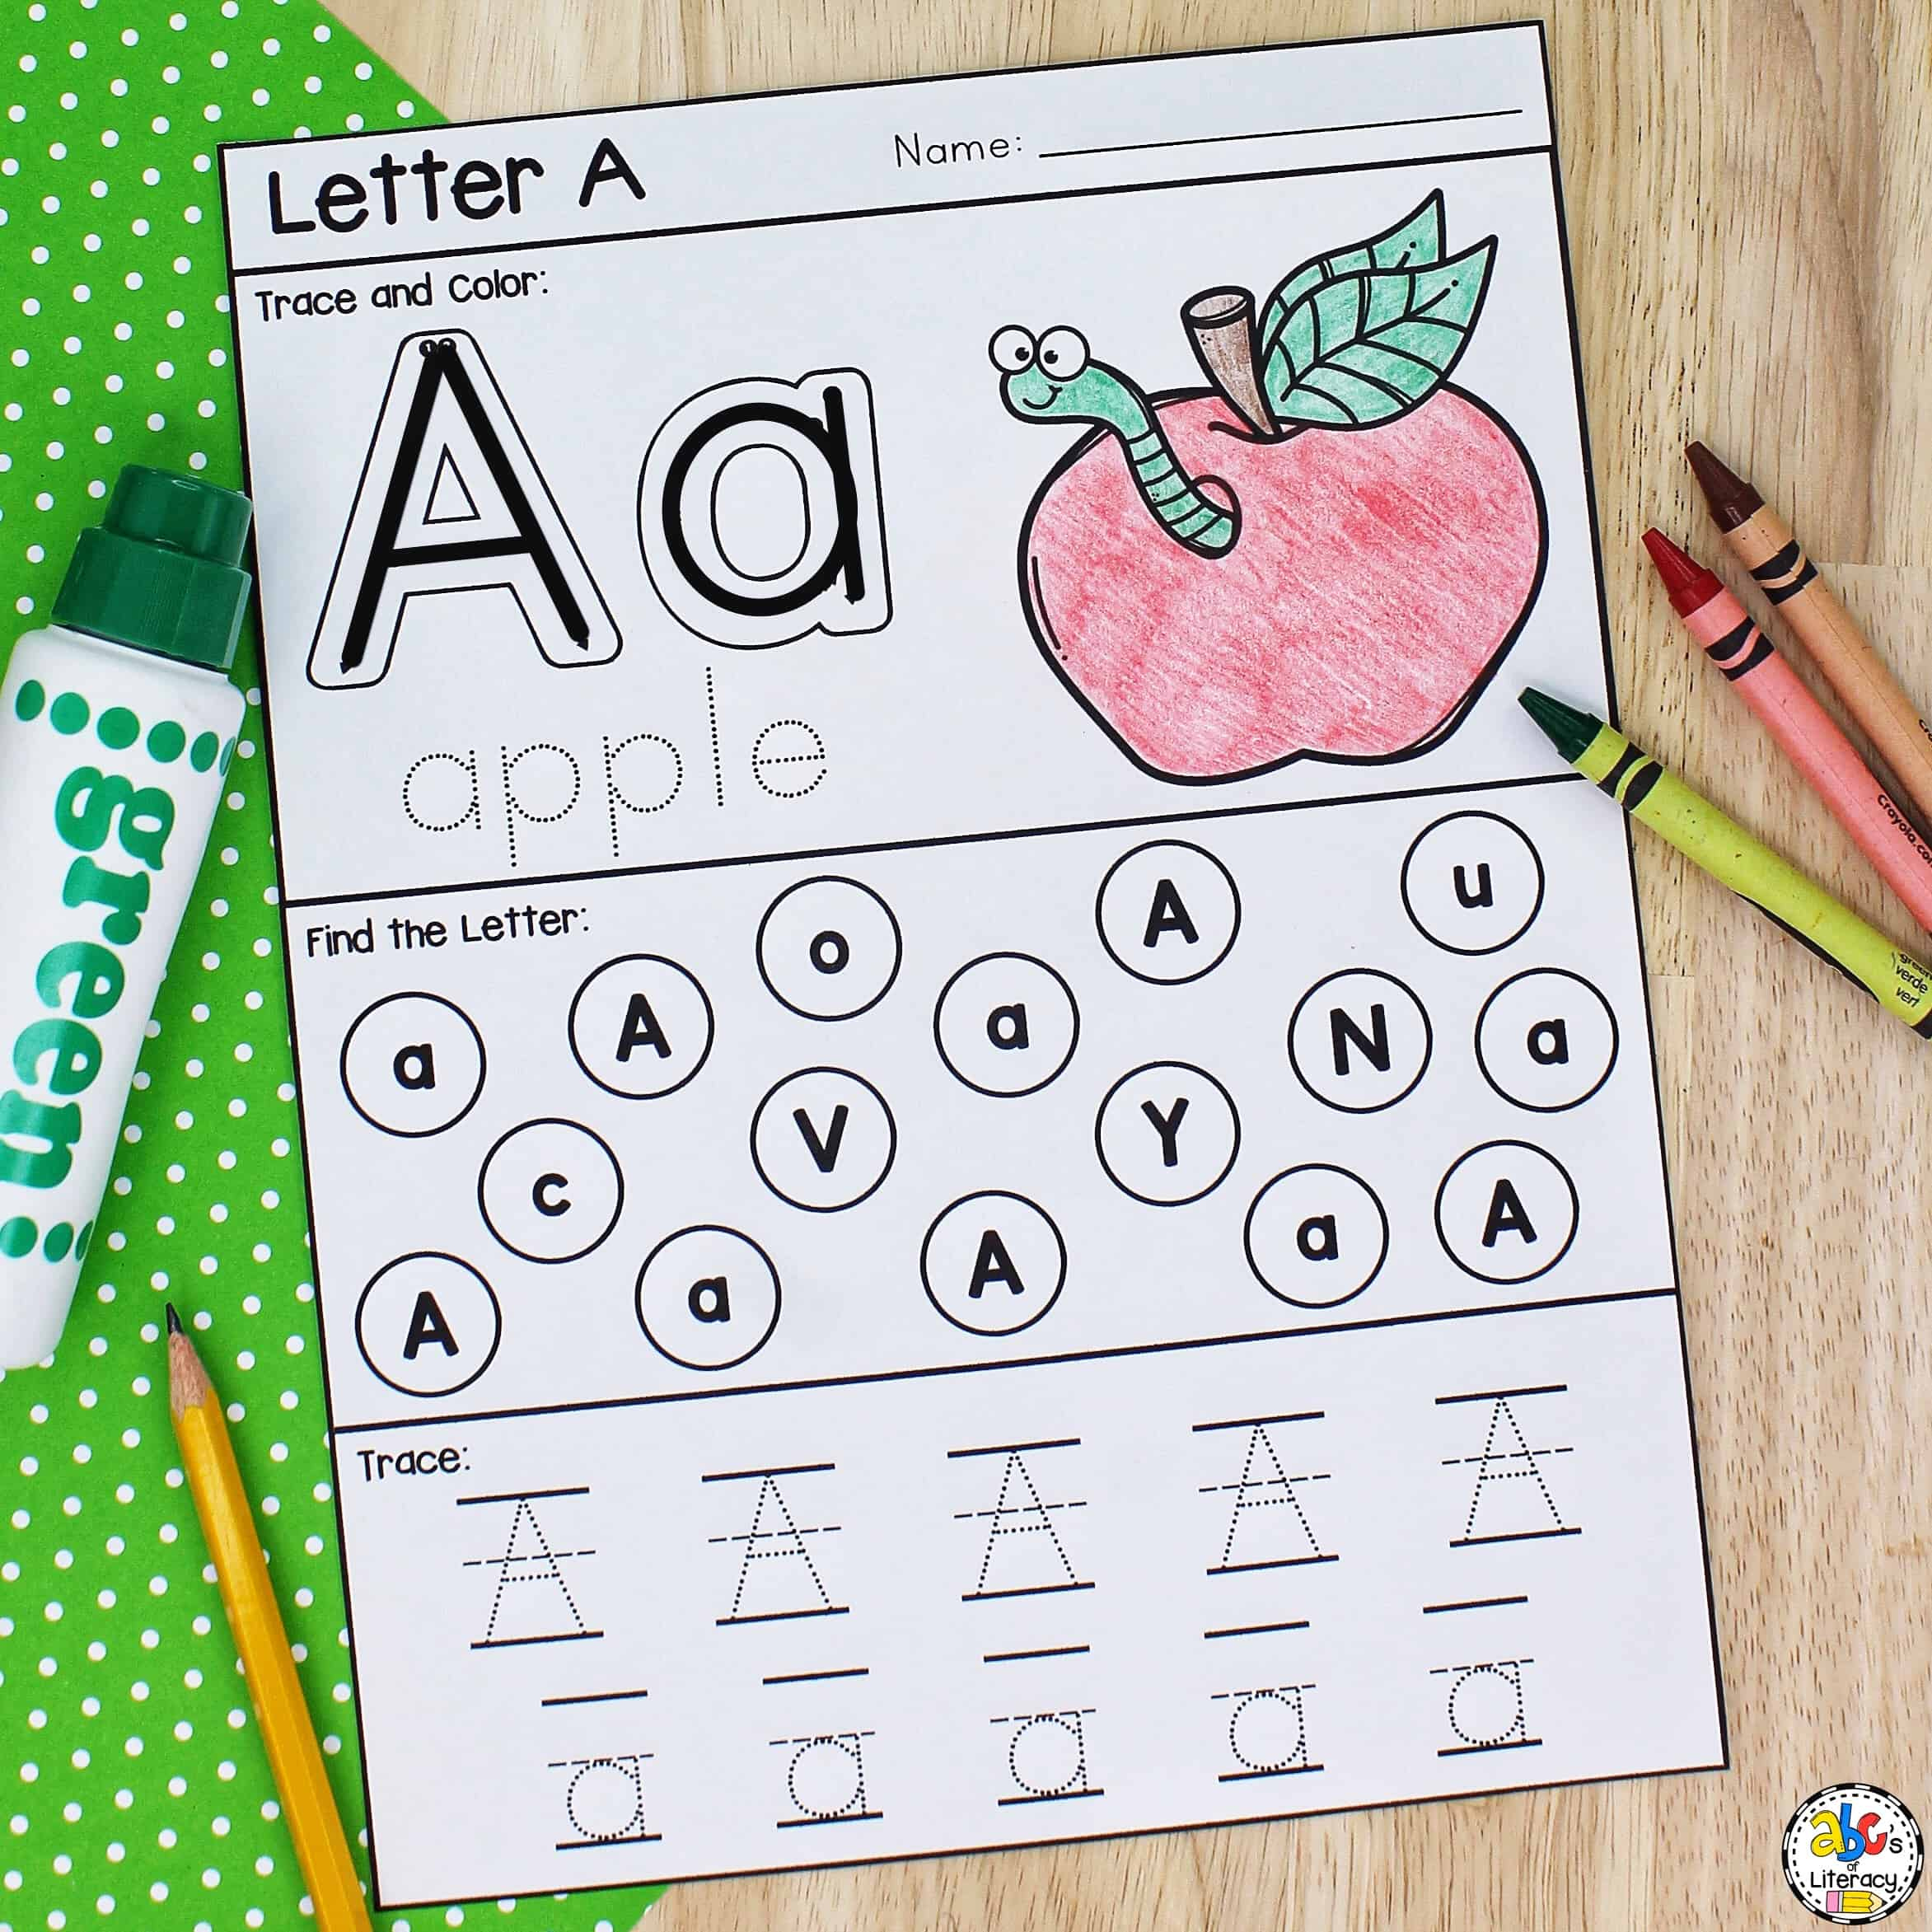 Letter A Printable: Preschool Worksheet For Letter Recognition within Free Printable Letter Recognition Worksheets